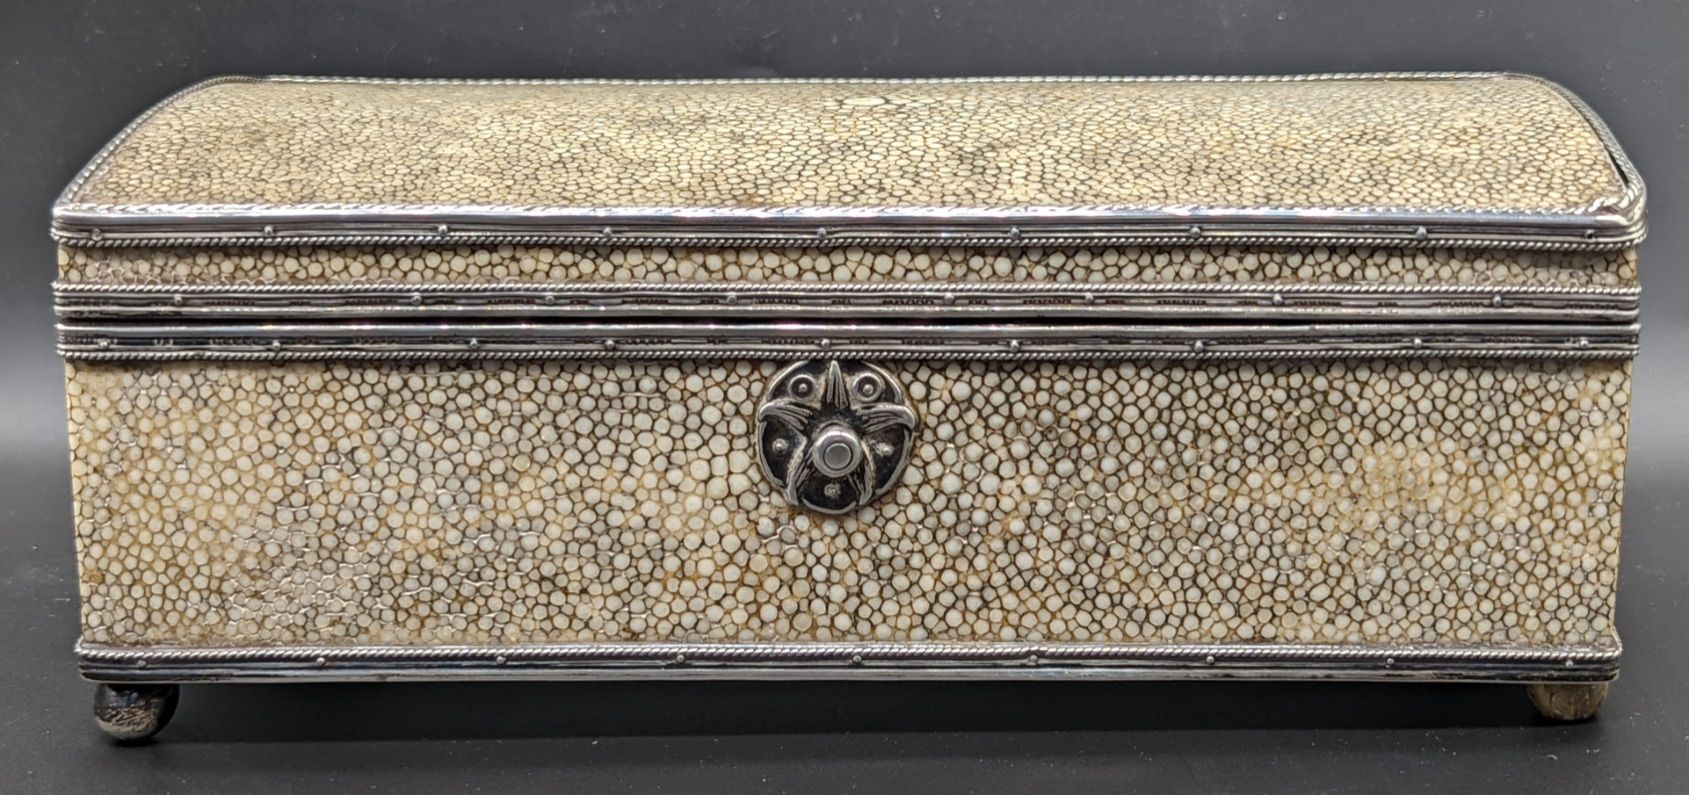 John Paul Cooper 一个约翰-保罗-库珀的银色和莎草绿色工艺美术盒，按钮锁，盖子内部有JPC的贴花，长22厘米。